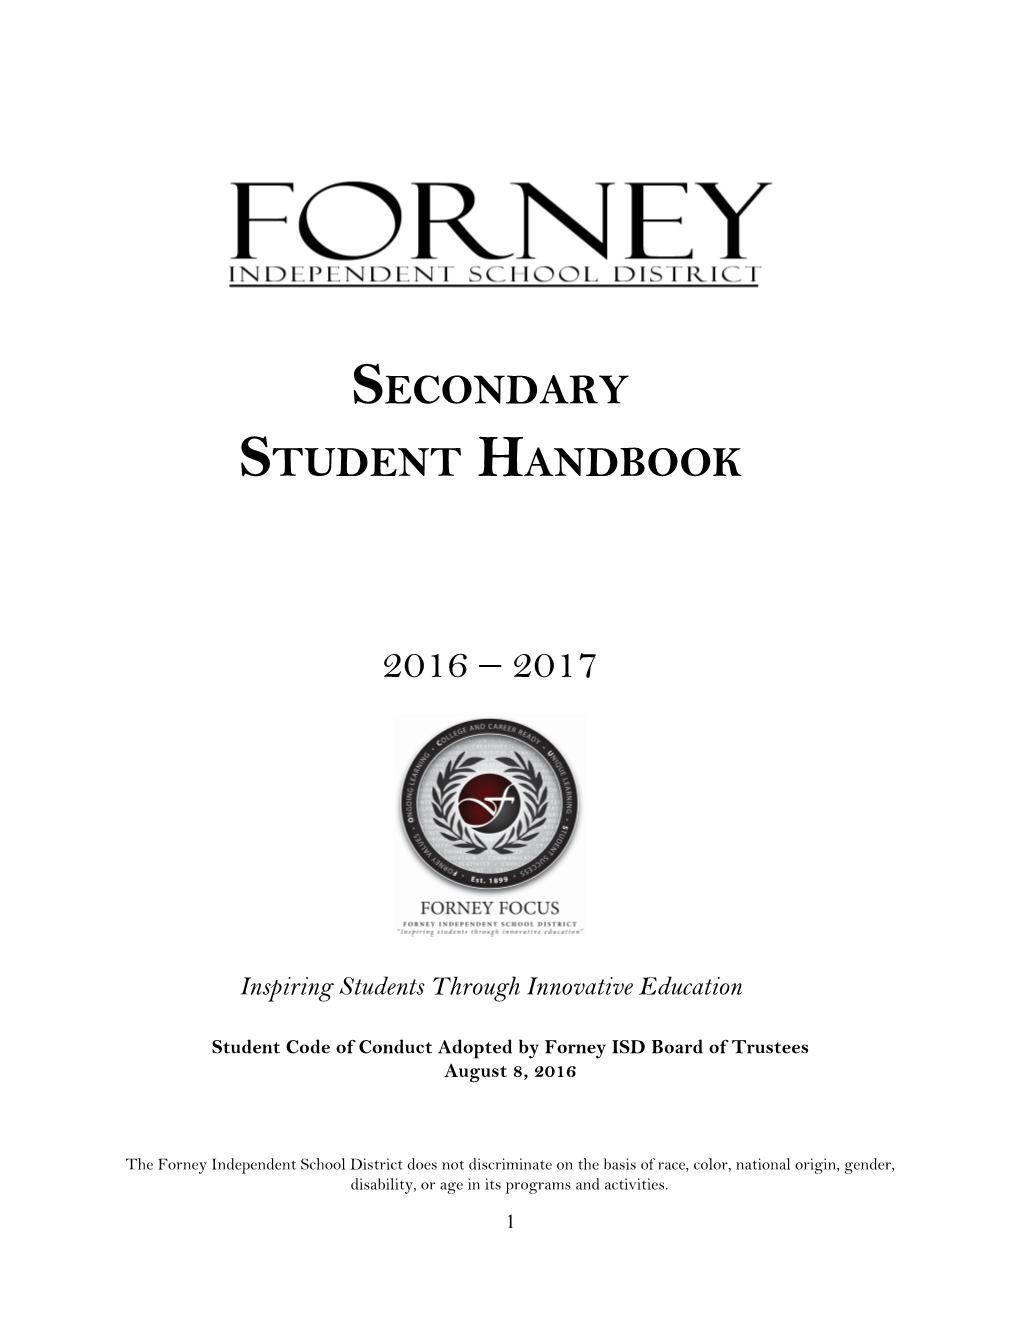 Secondary Student Handbook 2016